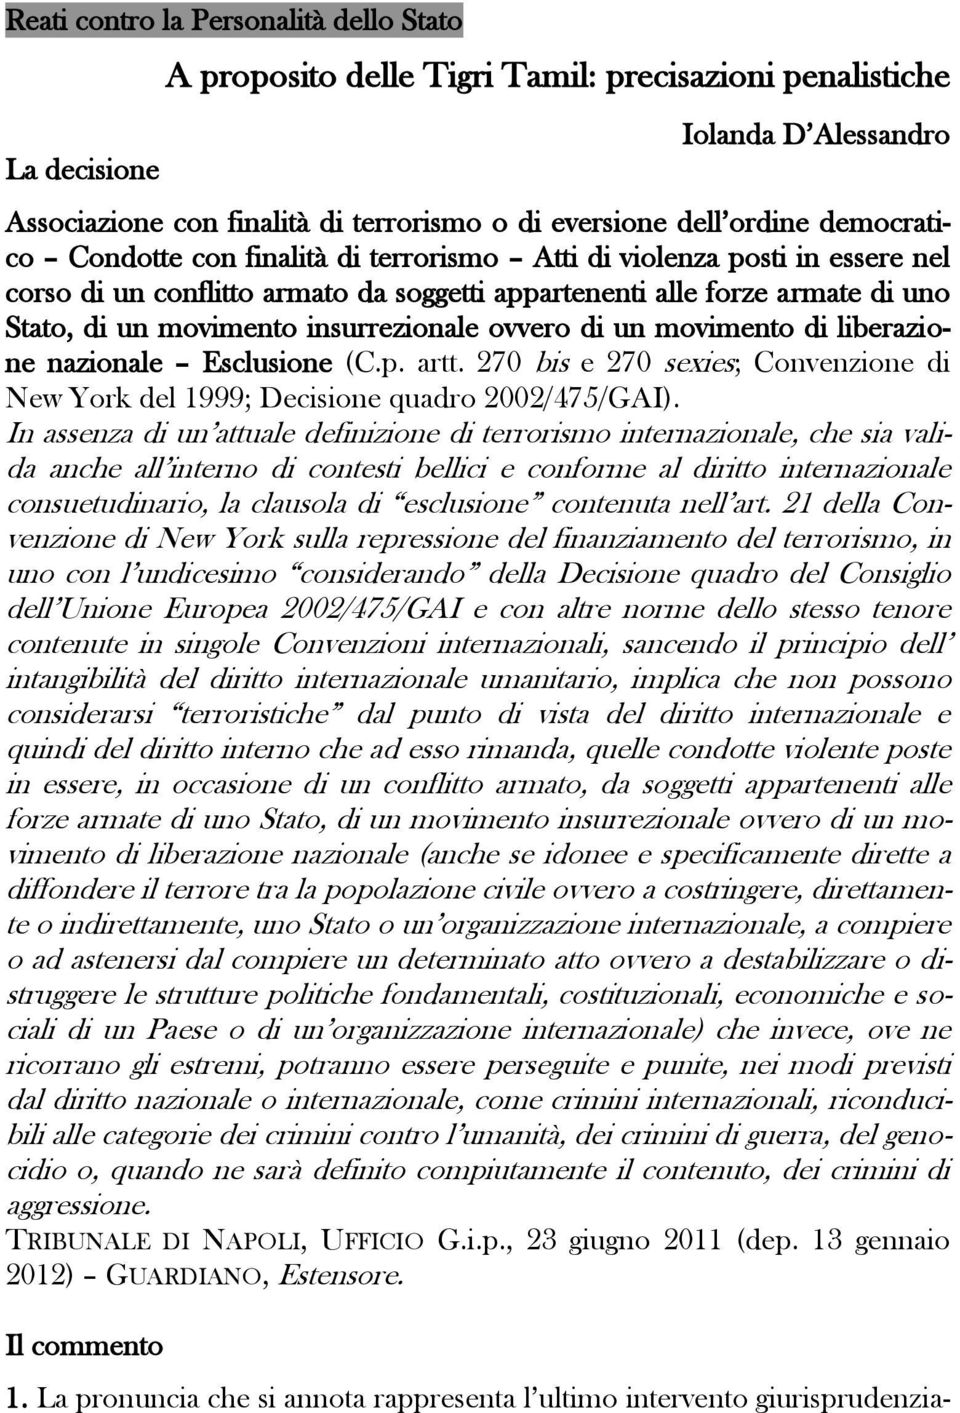 insurrezionale ovvero di un movimento di liberazione nazionale Esclusione (C.p. artt. 270 bis e 270 sexies; Convenzione di New York del 1999; Decisione quadro 2002/475/GAI).